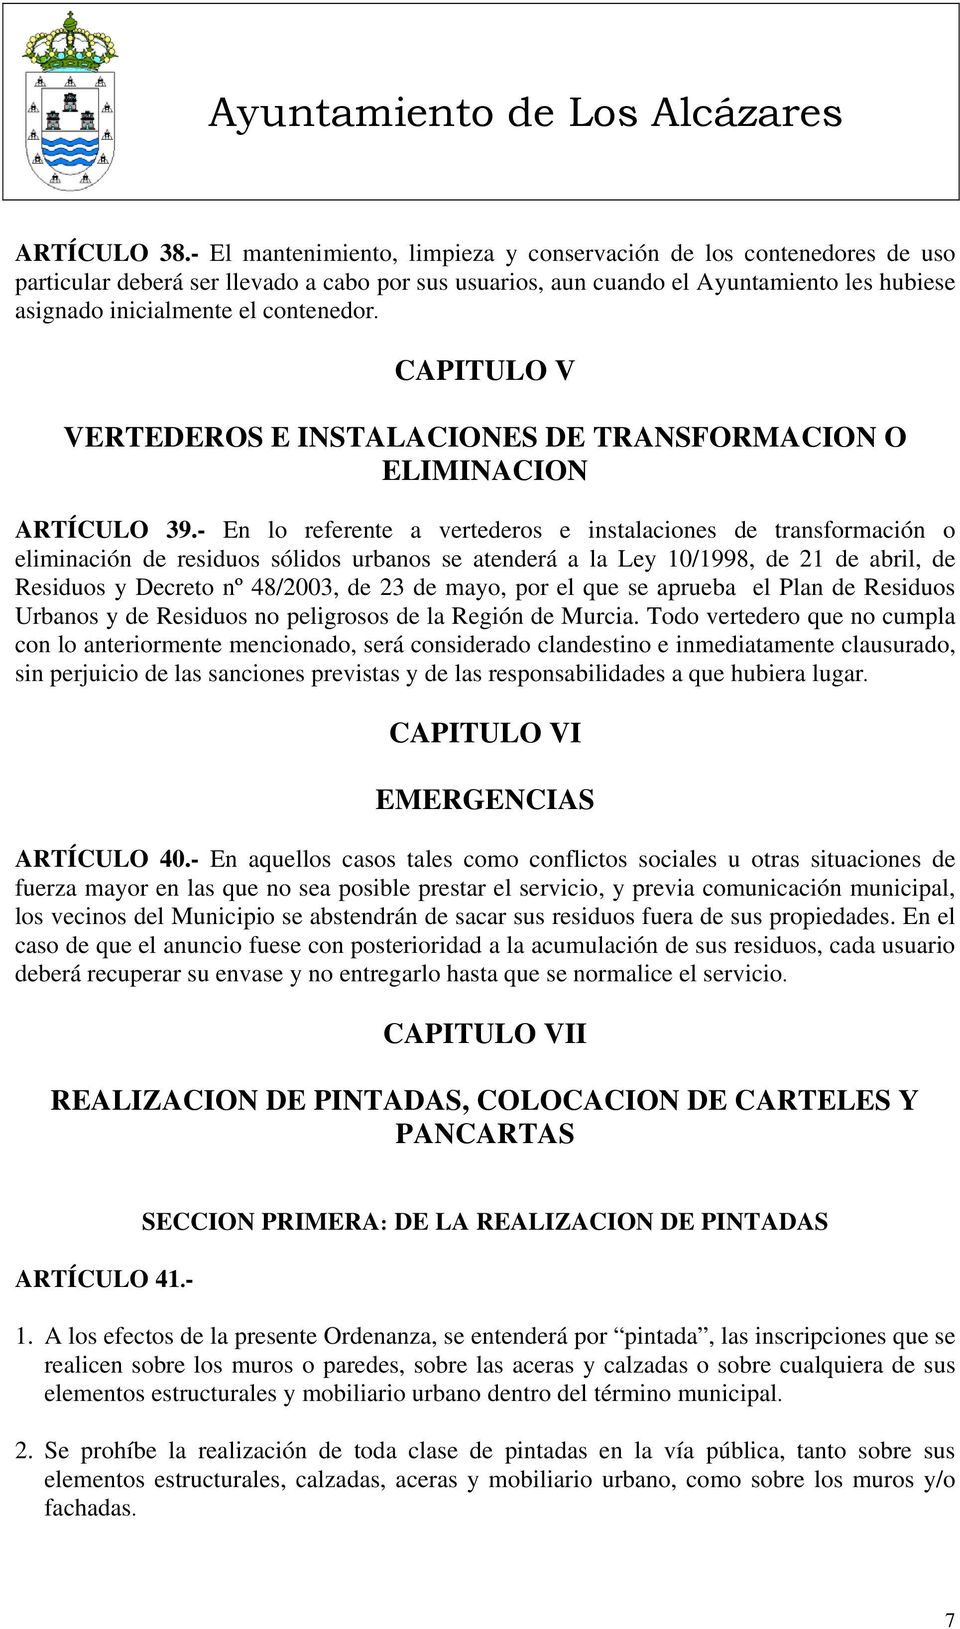 contenedor. CAPITULO V VERTEDEROS E INSTALACIONES DE TRANSFORMACION O ELIMINACION ARTÍCULO 39.